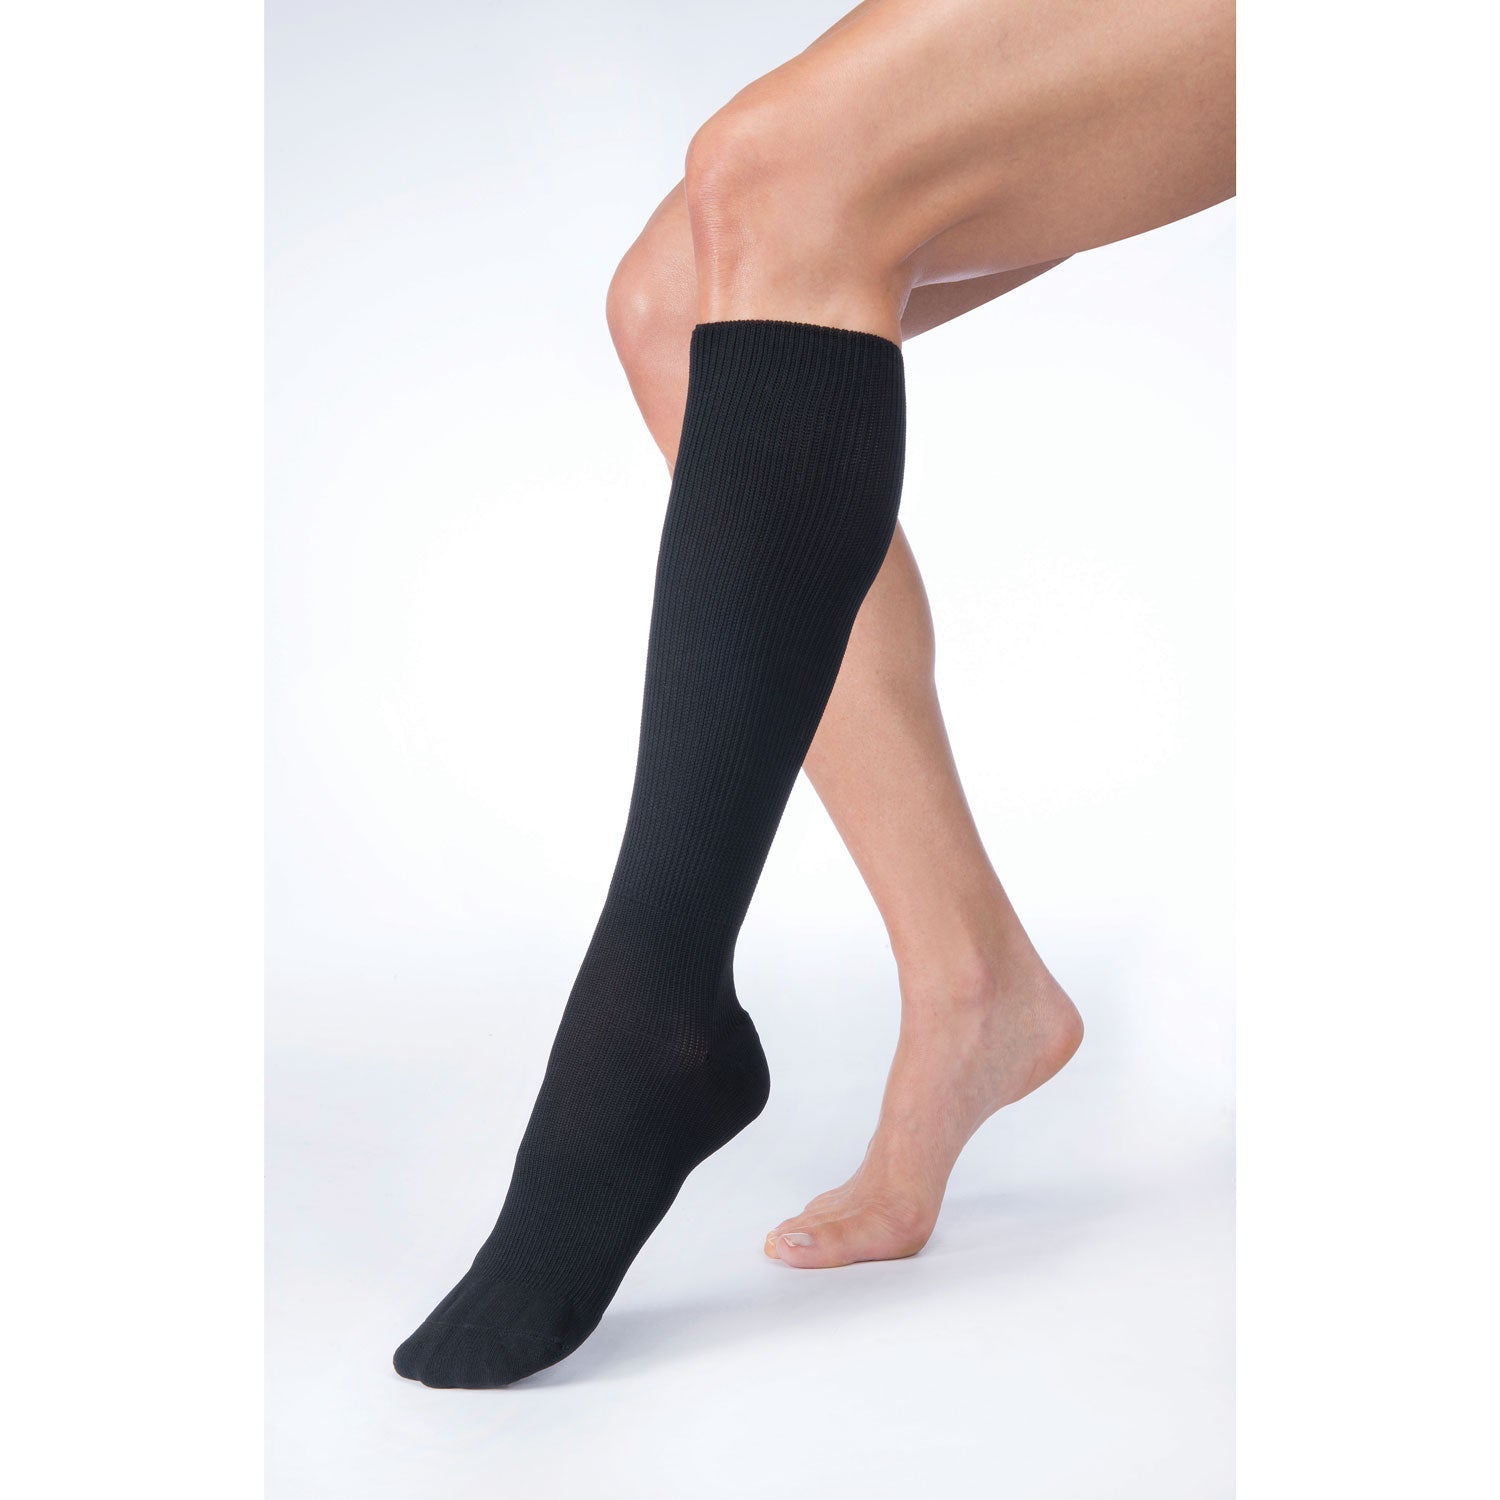 Hybrid knee-high graduated compression socks (Medium 15